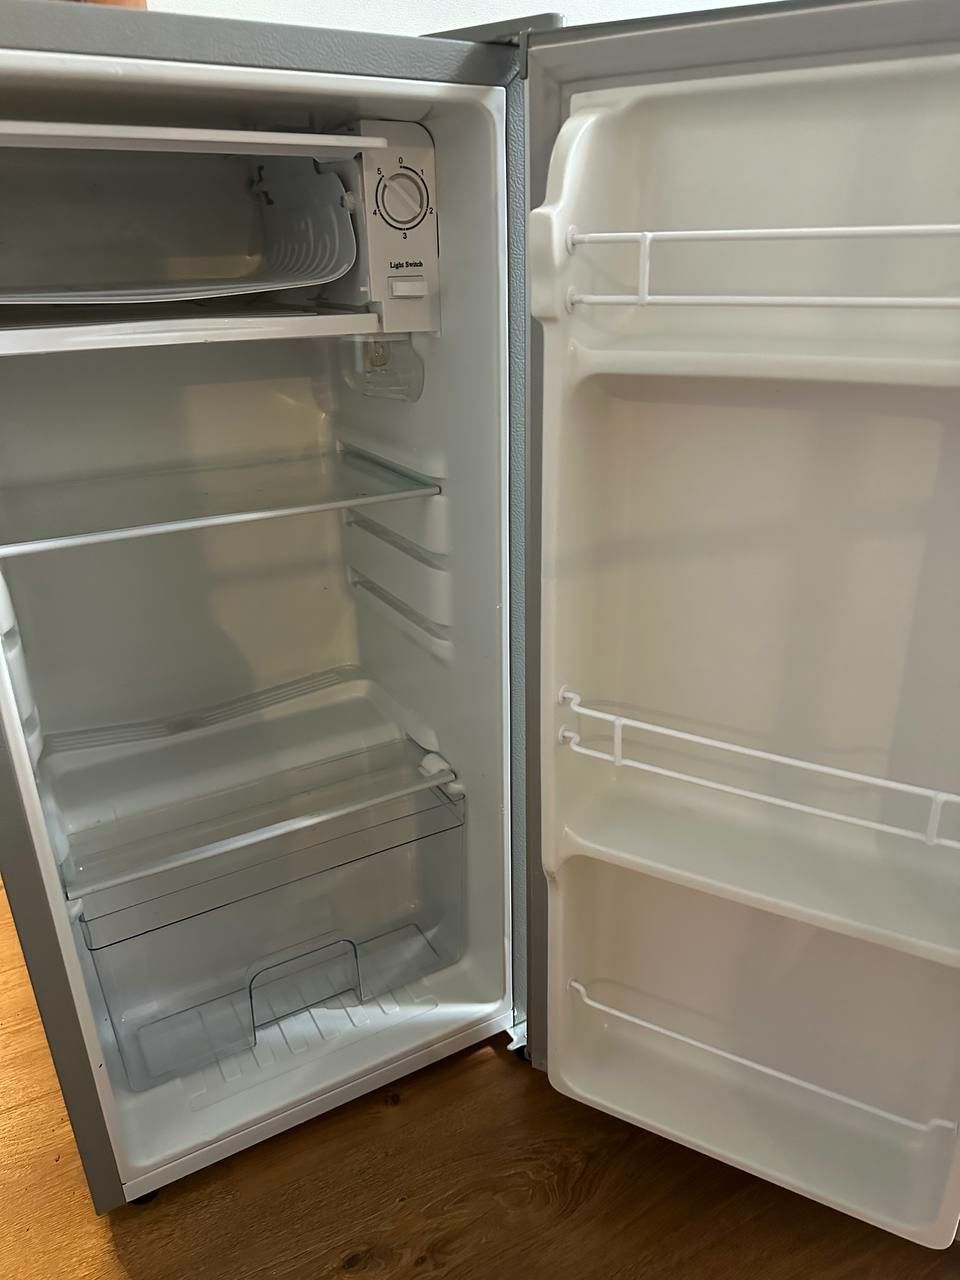 Холодильник leadbros, в отличном состоянии